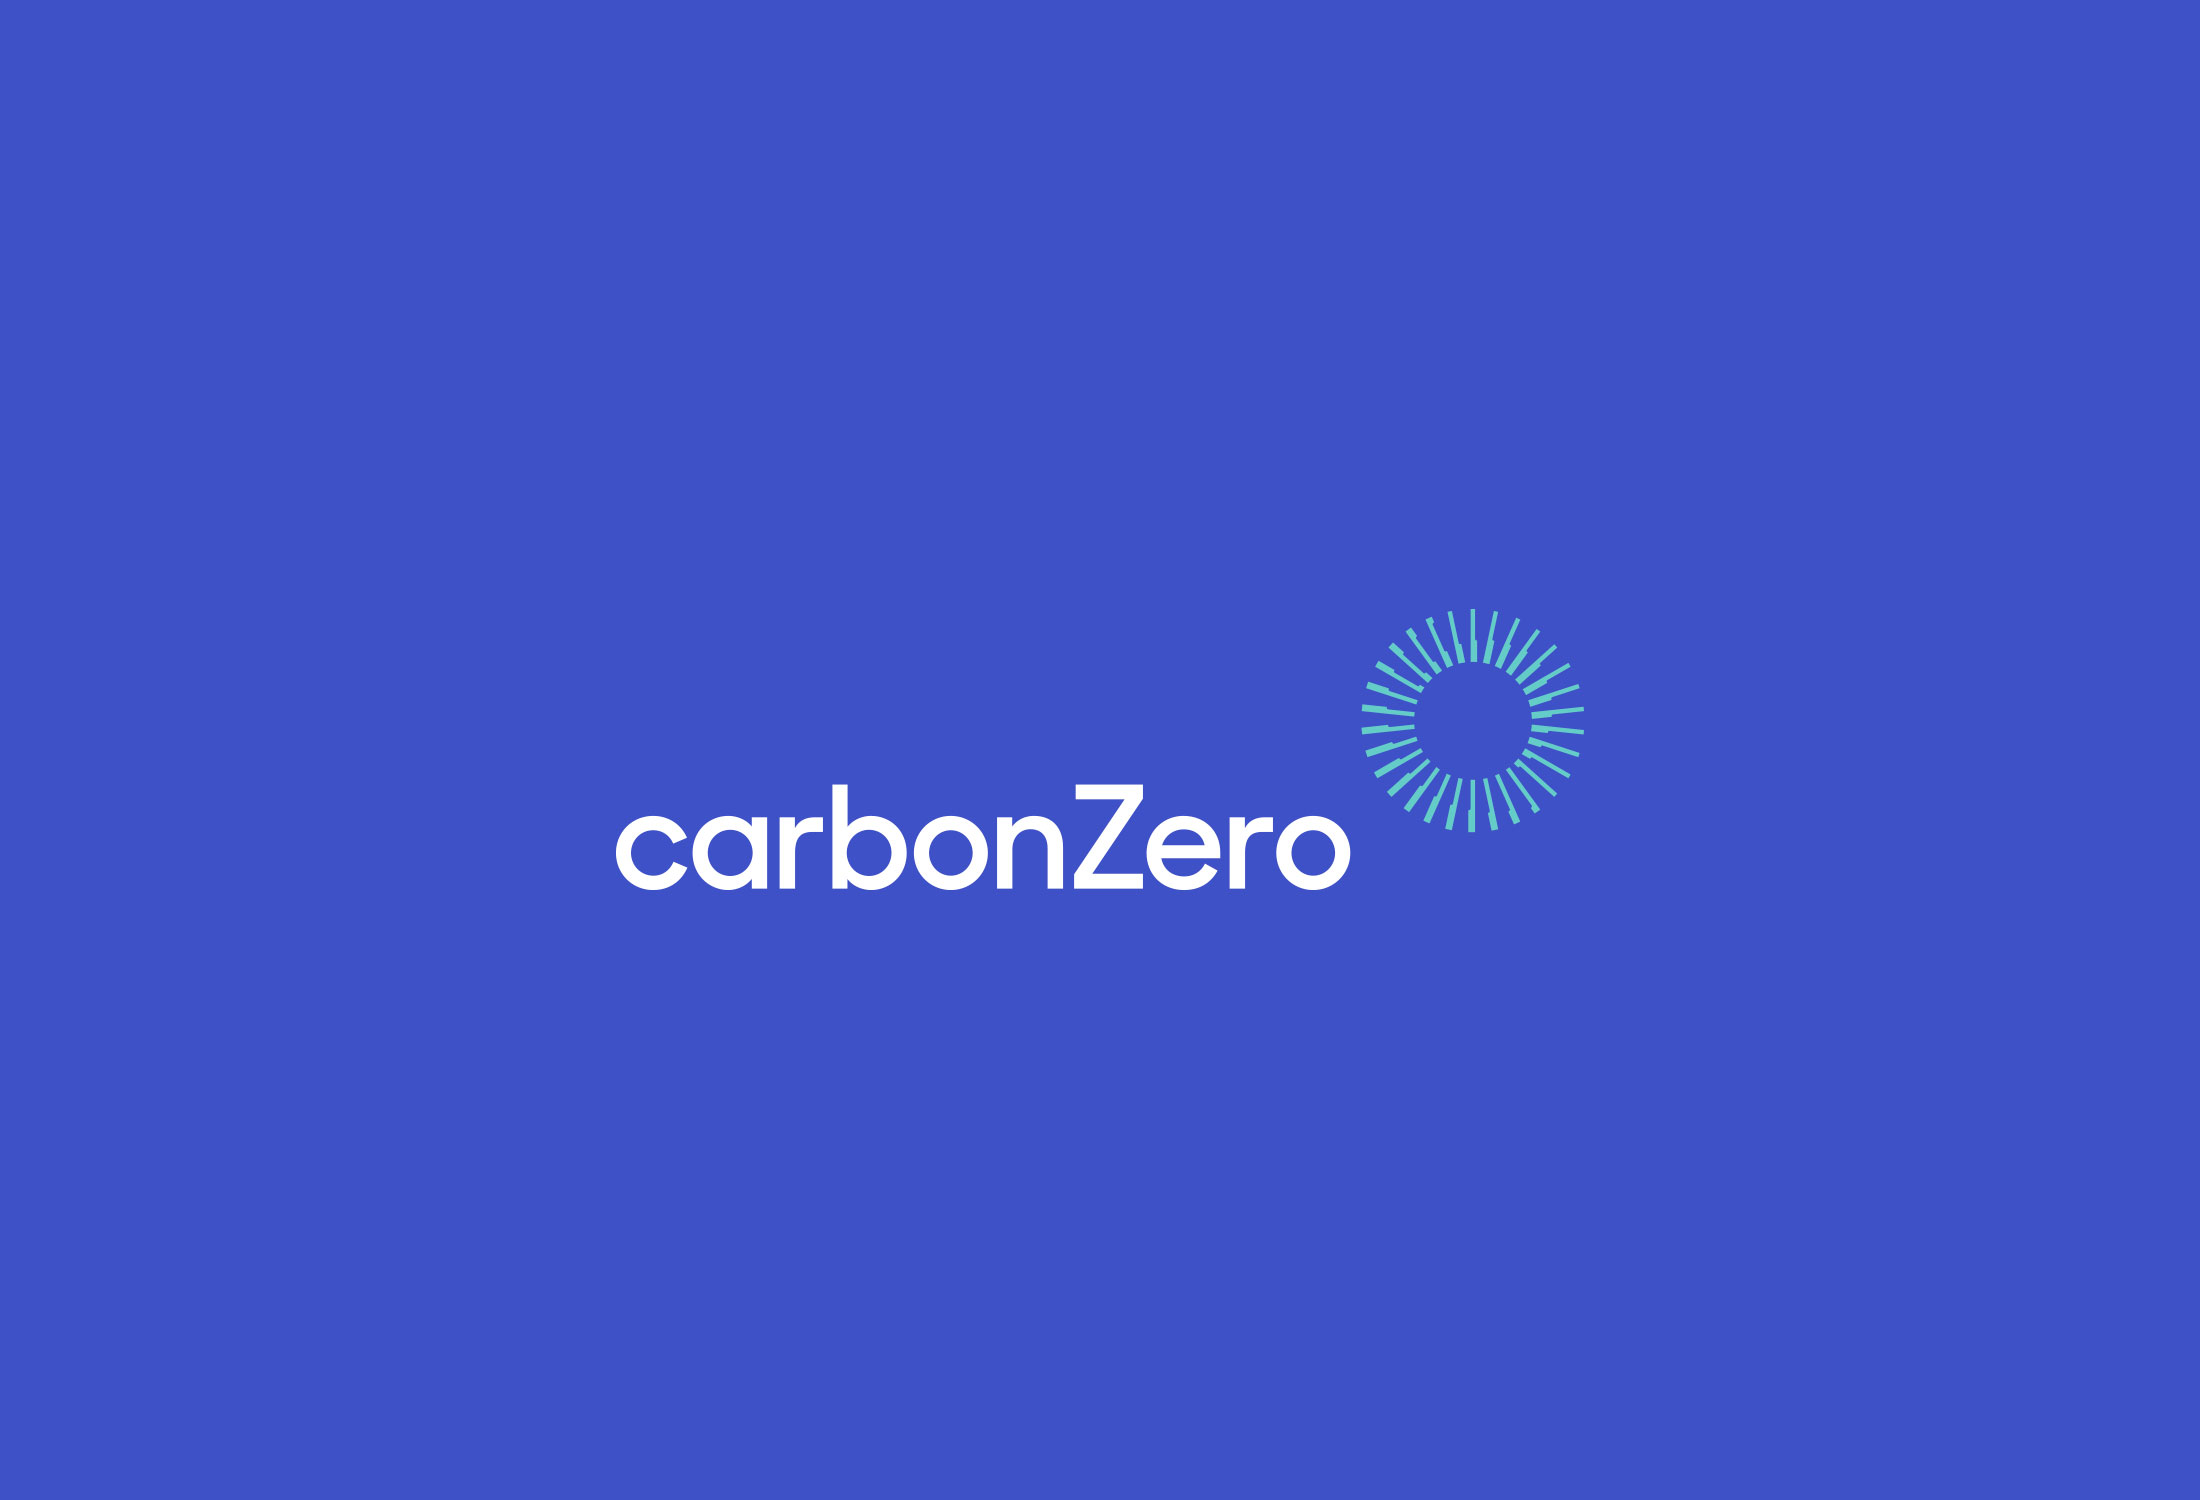 carbonZero